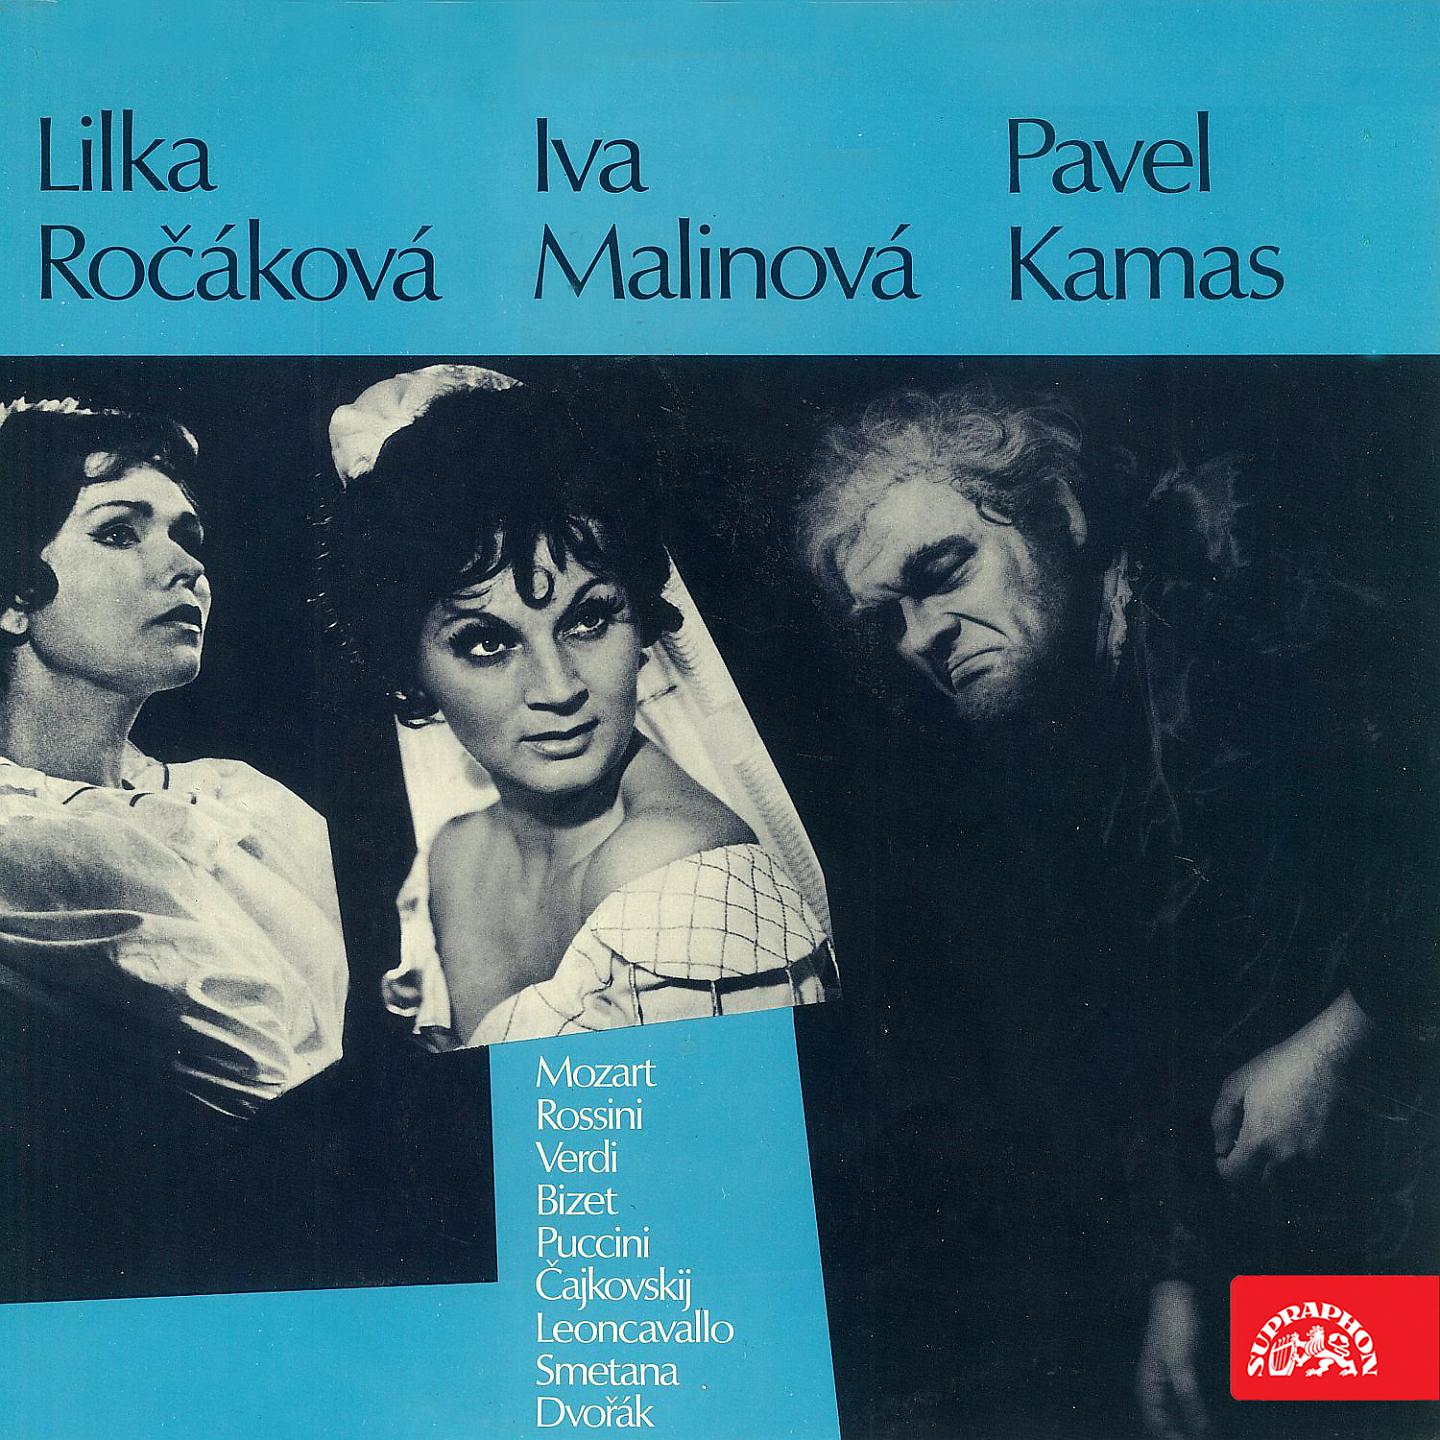 Постер альбома Lilka Ročáková, Ivanka Malinová, Pavel Kanas